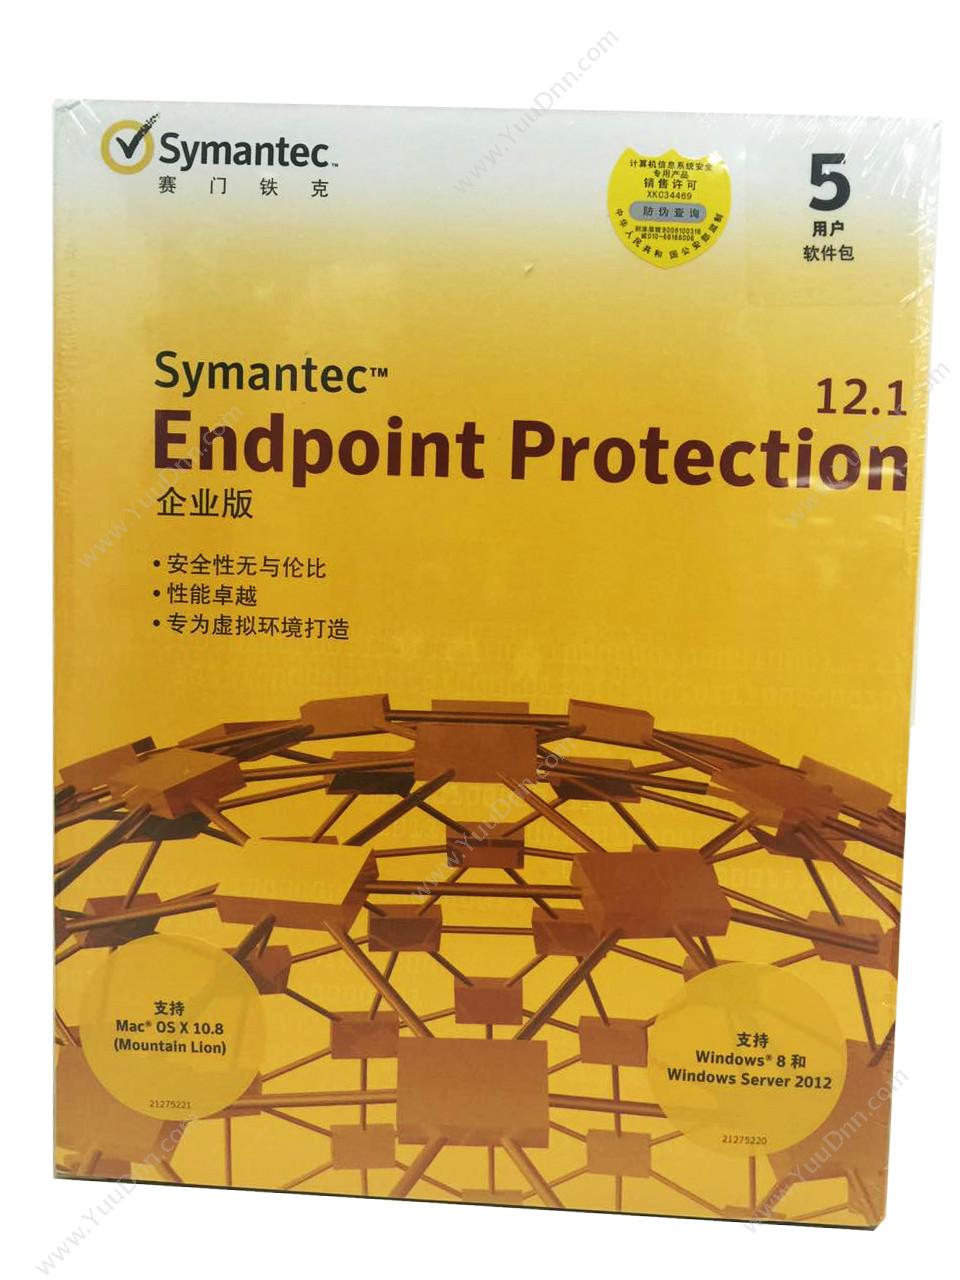 赛门铁克 Symantec中文彩包-企业版50用户三年（14版）终端安全防护